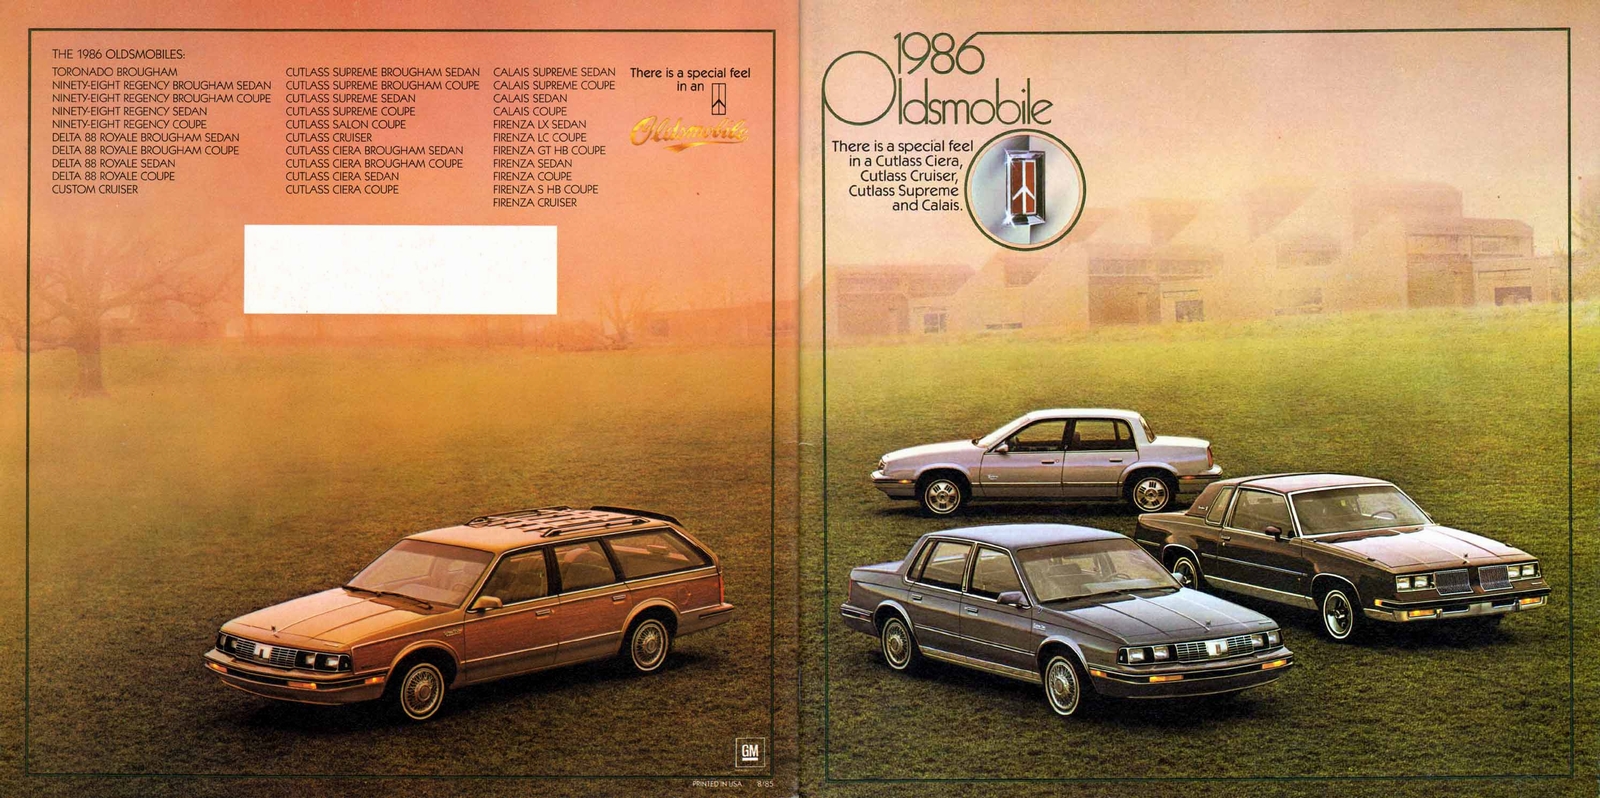 n_1986 Oldsmobile Mid Size (1)-46-47.jpg